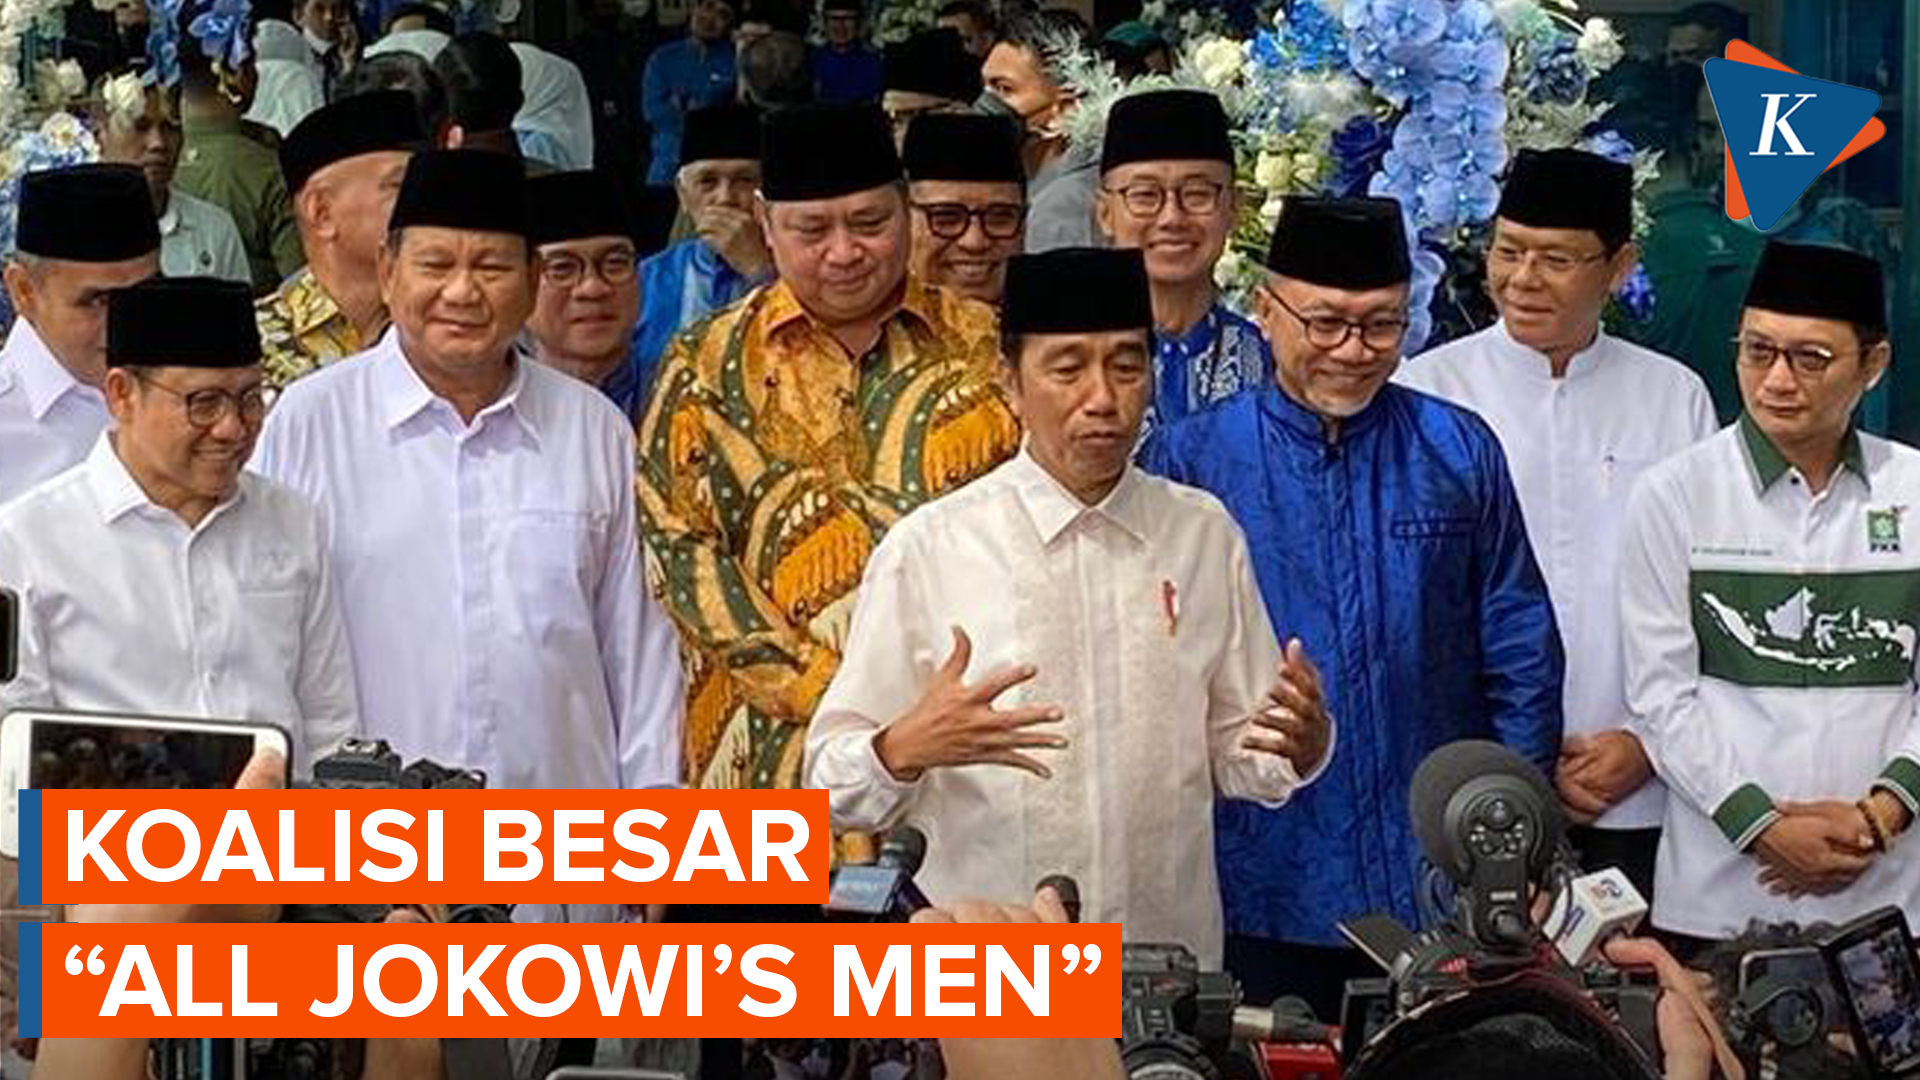 Koalisi Besar Pendukung Jokowi Kian Menguat, Partai Pemerintah Seriusi Penjajakan